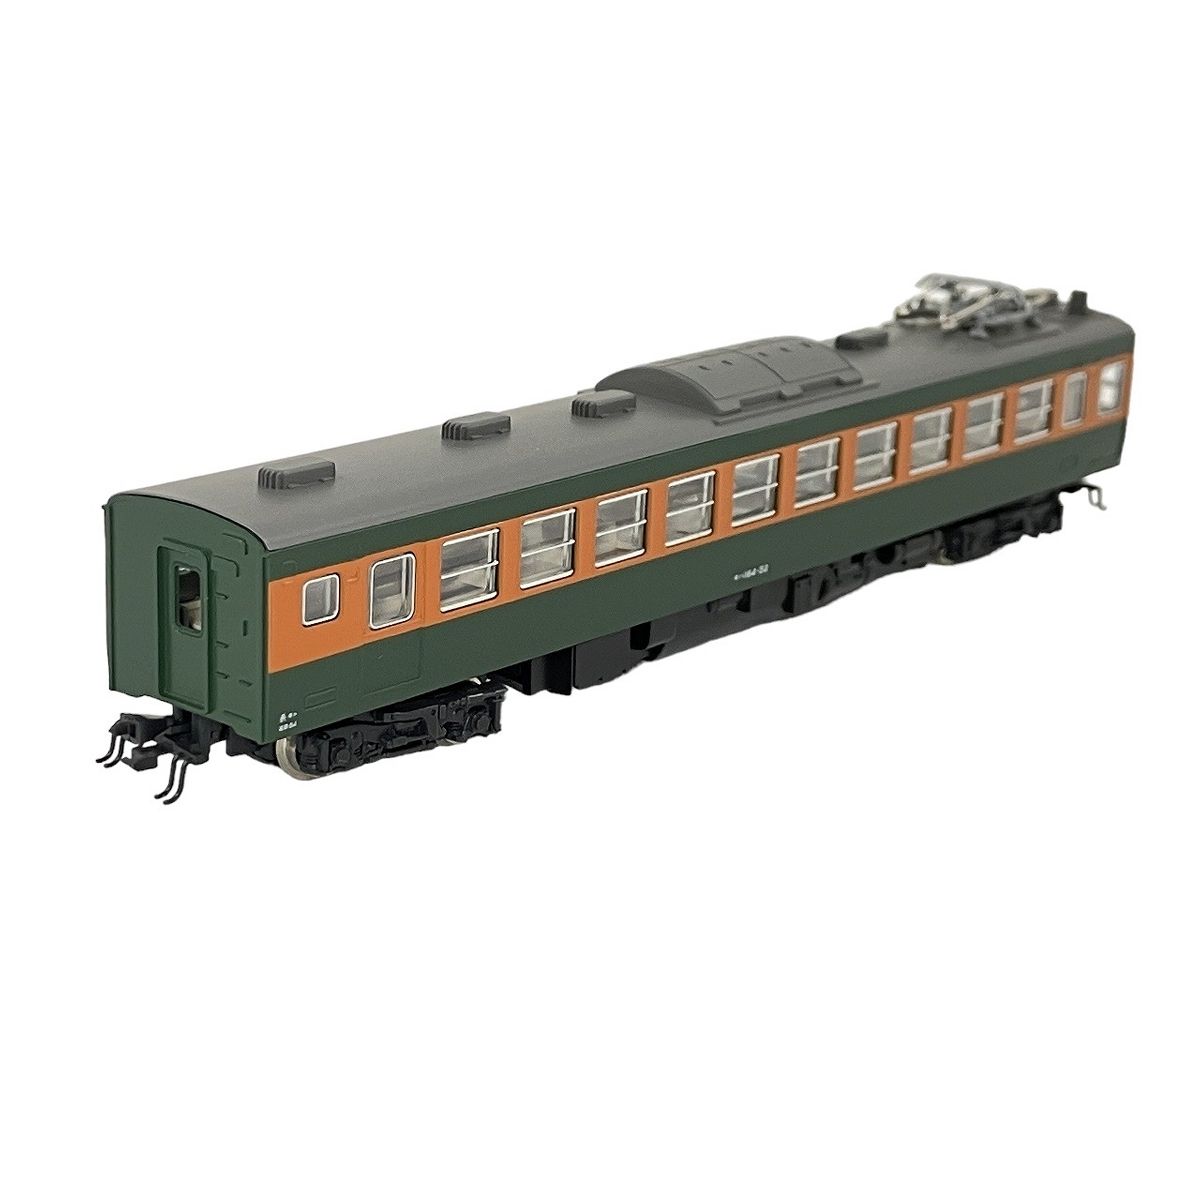 カトー [RWM]4055 モハ164(M)(動力付き) Nゲージ 鉄道模型(62005102)